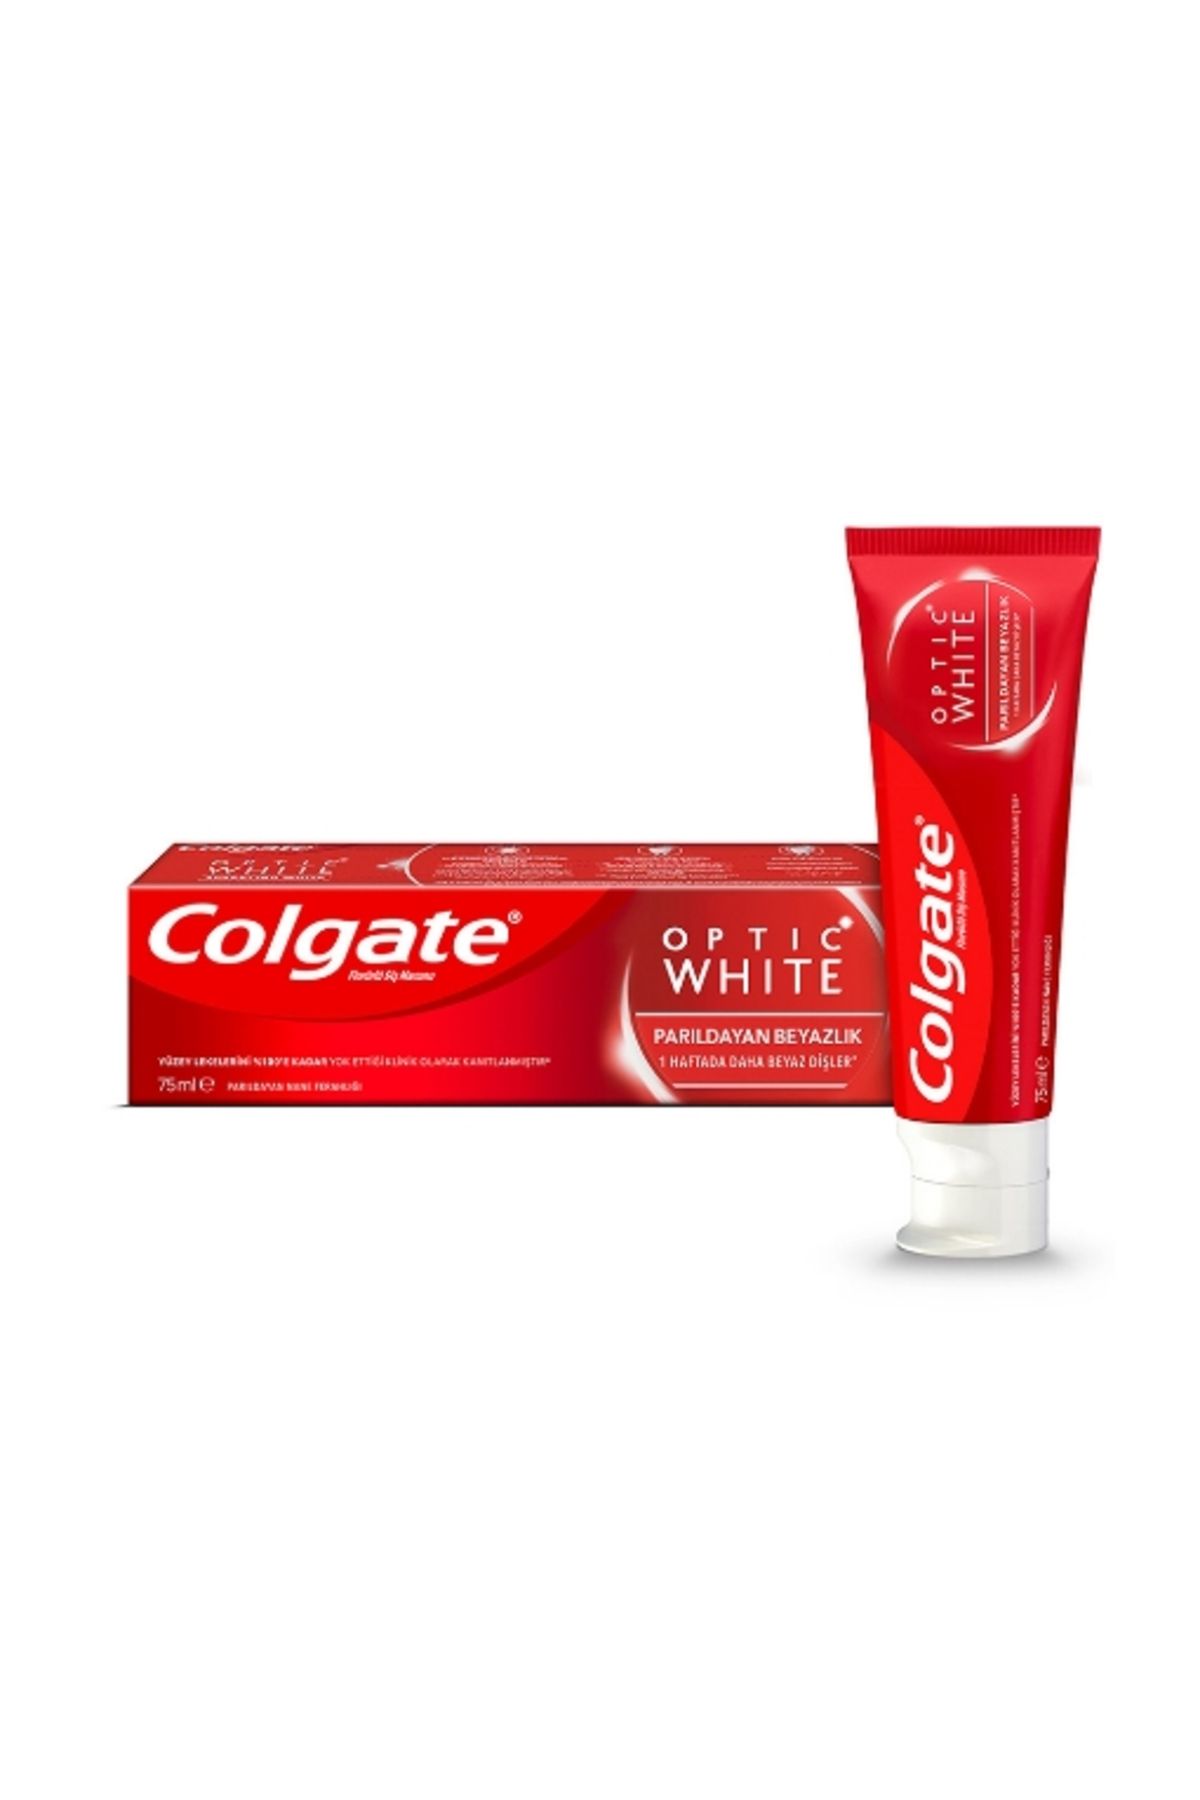 Colgate Diş Macunu Optic White Parıldayan Beyazlık 75 ml. (4'lü)